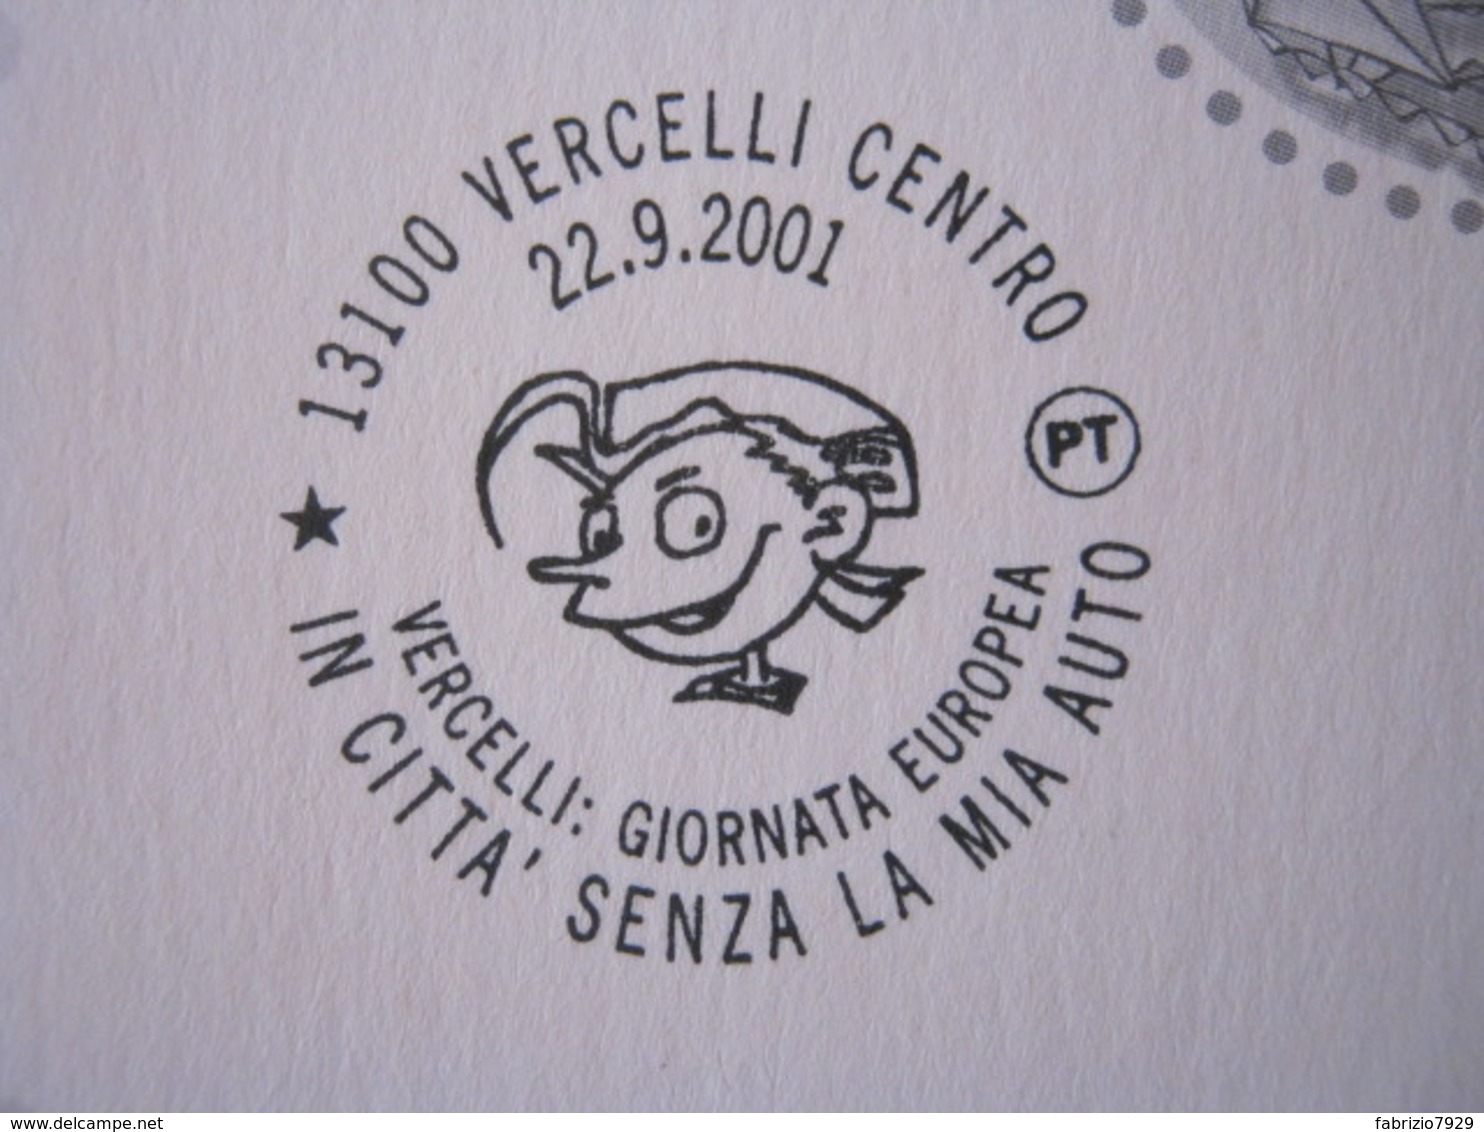 A.09 ITALIA ANNULLO - 2001 VERCELLI IN CITTA' SENZA AUTO CAR GIORNATA EUROPEA EUROPA ECOLOGIA AMBIENTE - Protezione Dell'Ambiente & Clima